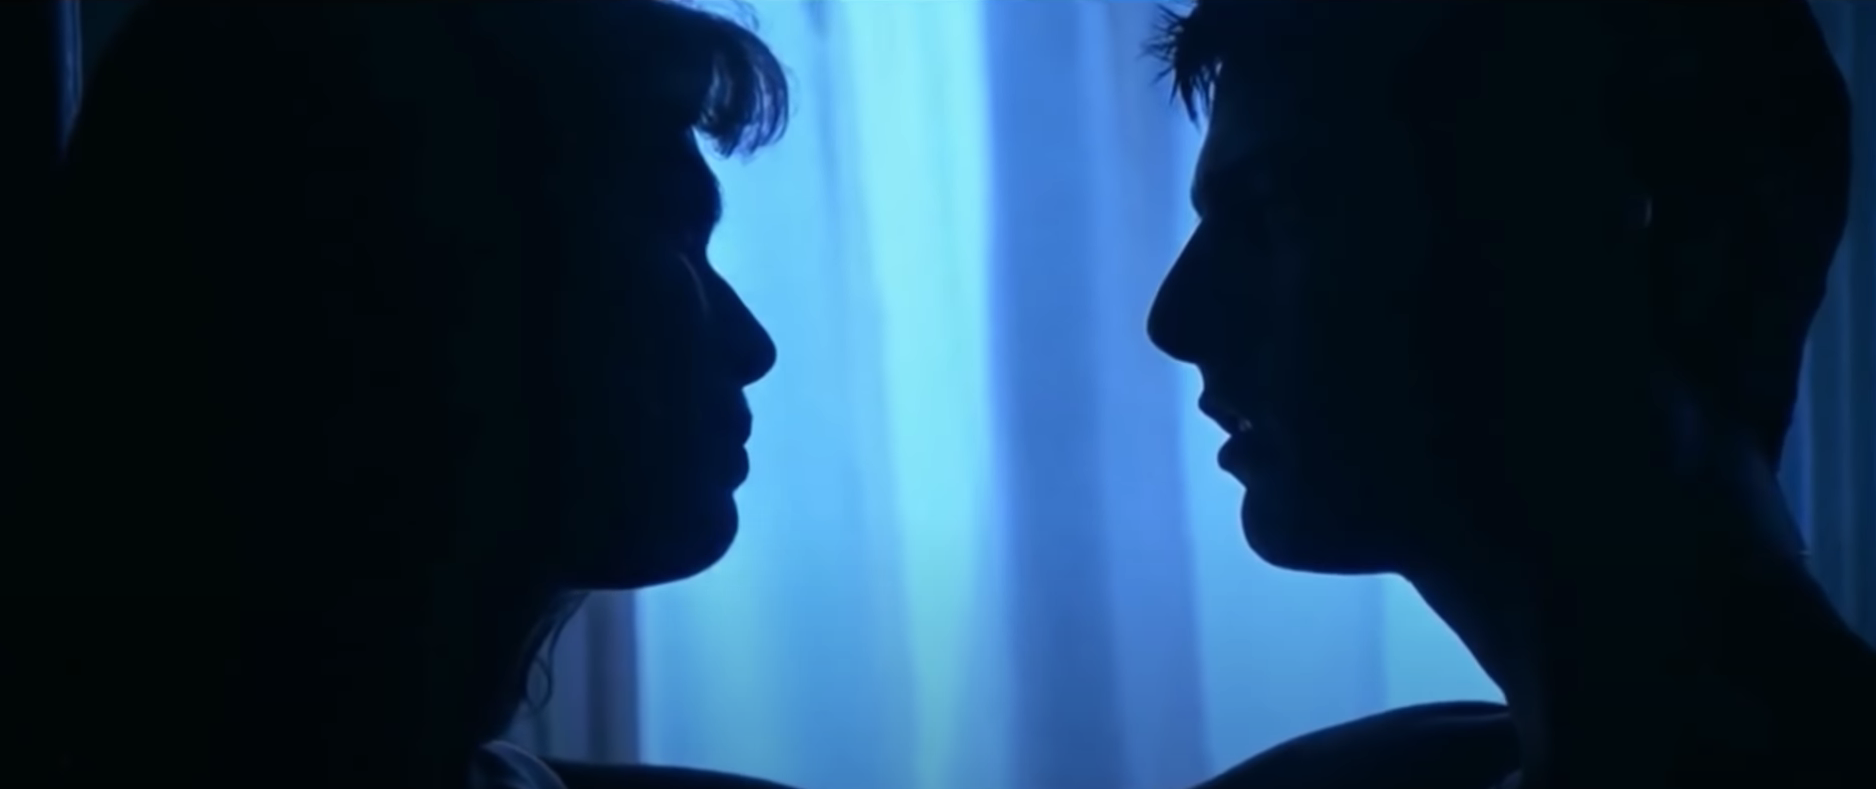 Top Gun : pourquoi la scène de sexe entre Tom Cruise et Kelly McGillis est si gênante